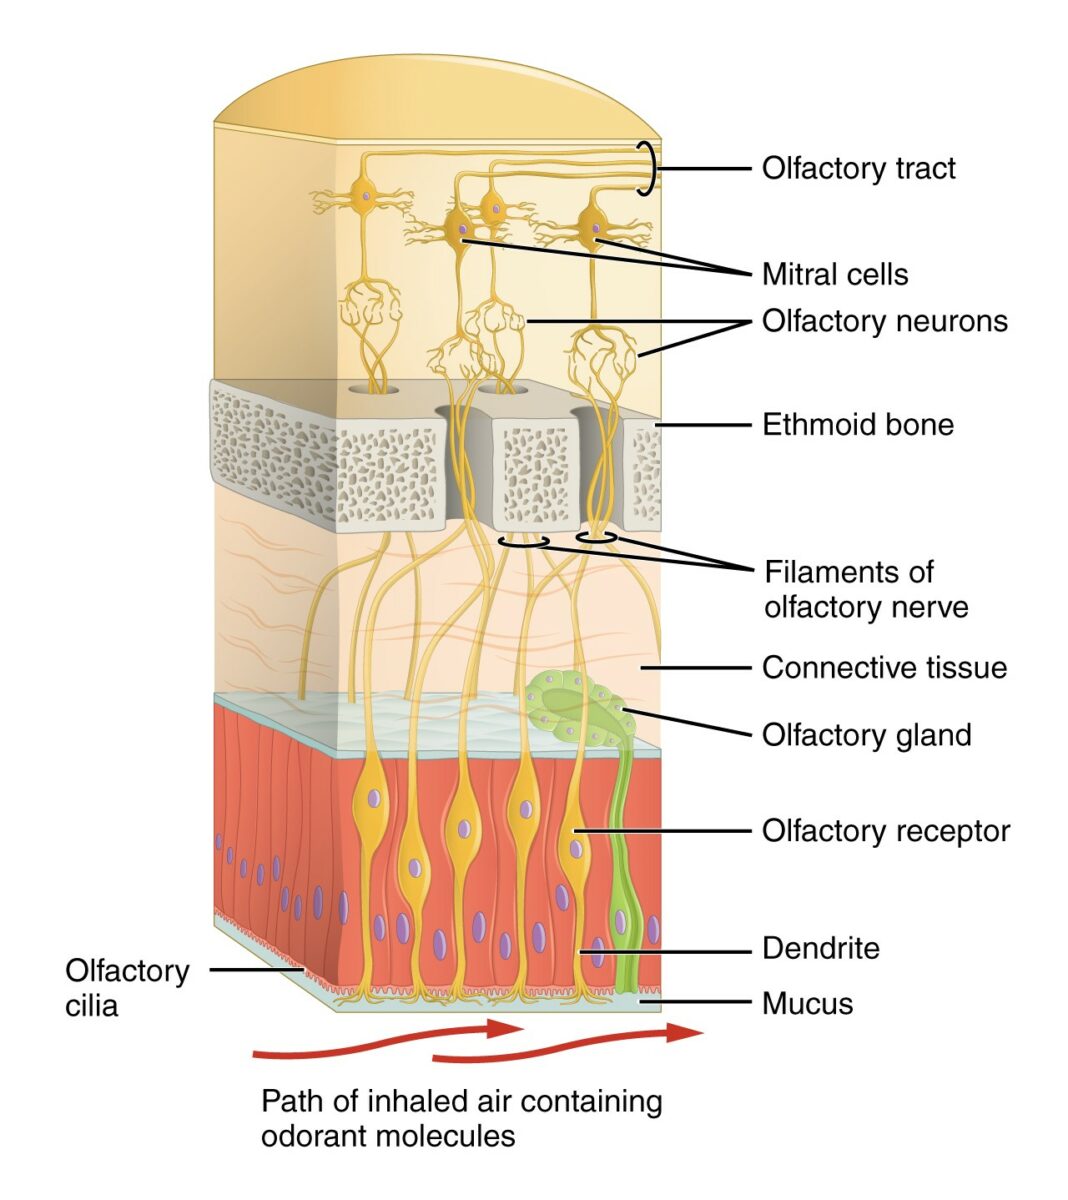 Diagrama que representa las primeras estructuras del sistema olfativo